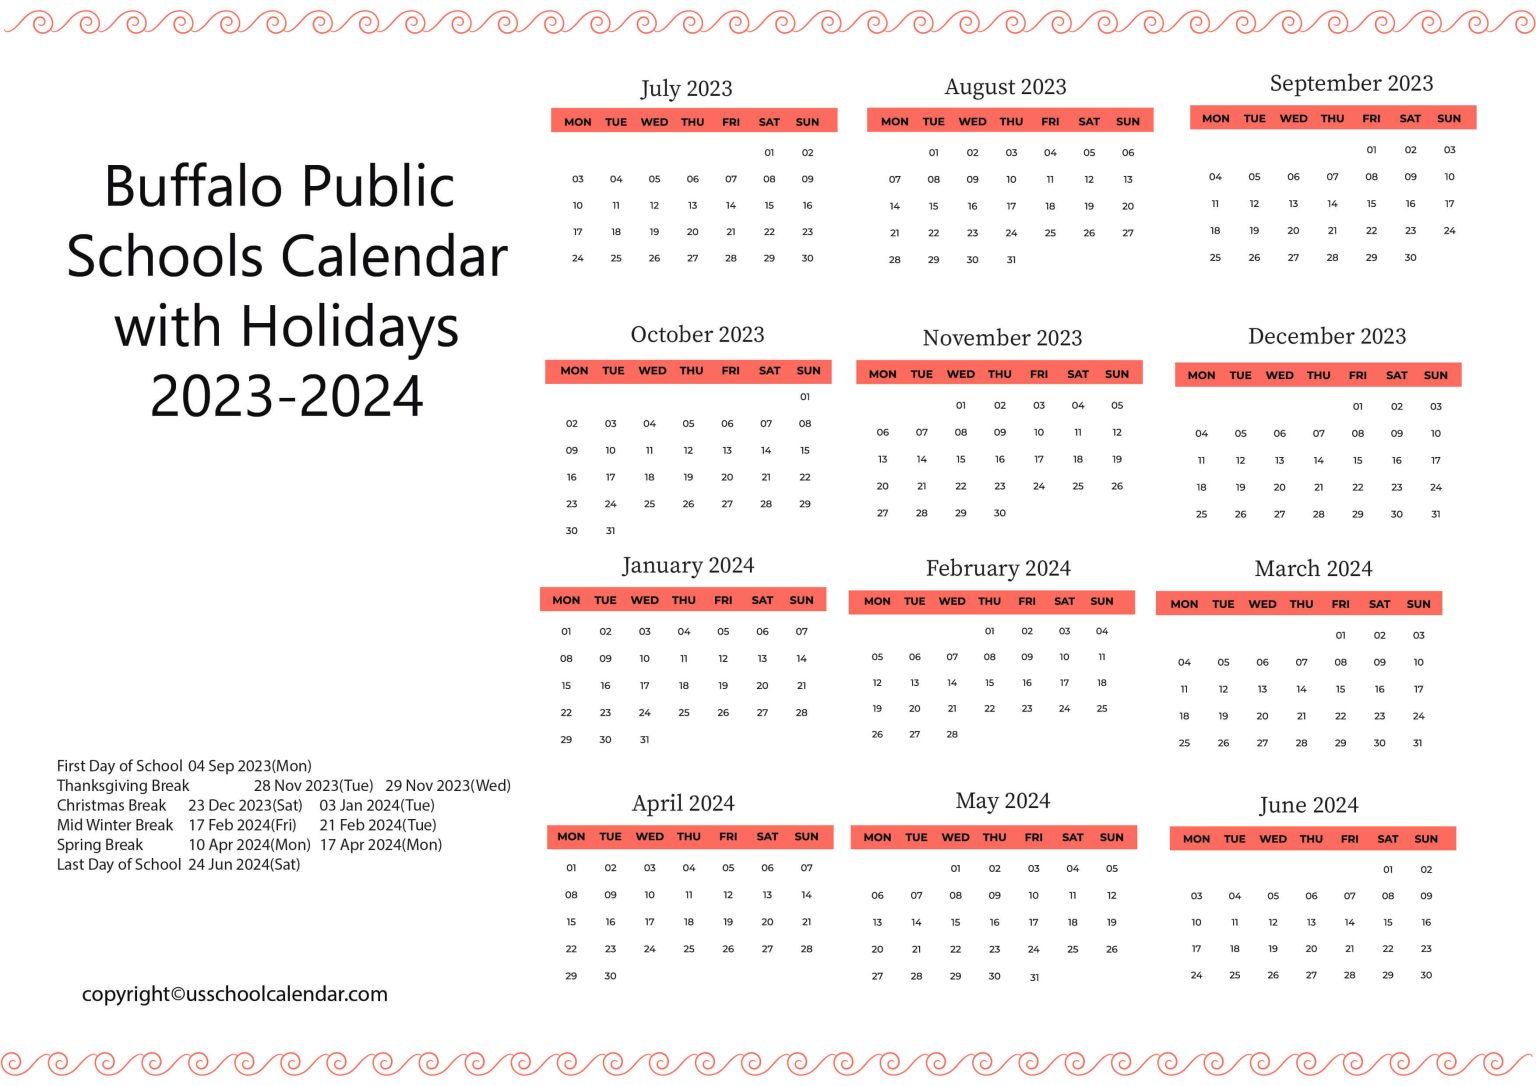 buffalo-public-schools-calendar-with-holidays-2023-2024